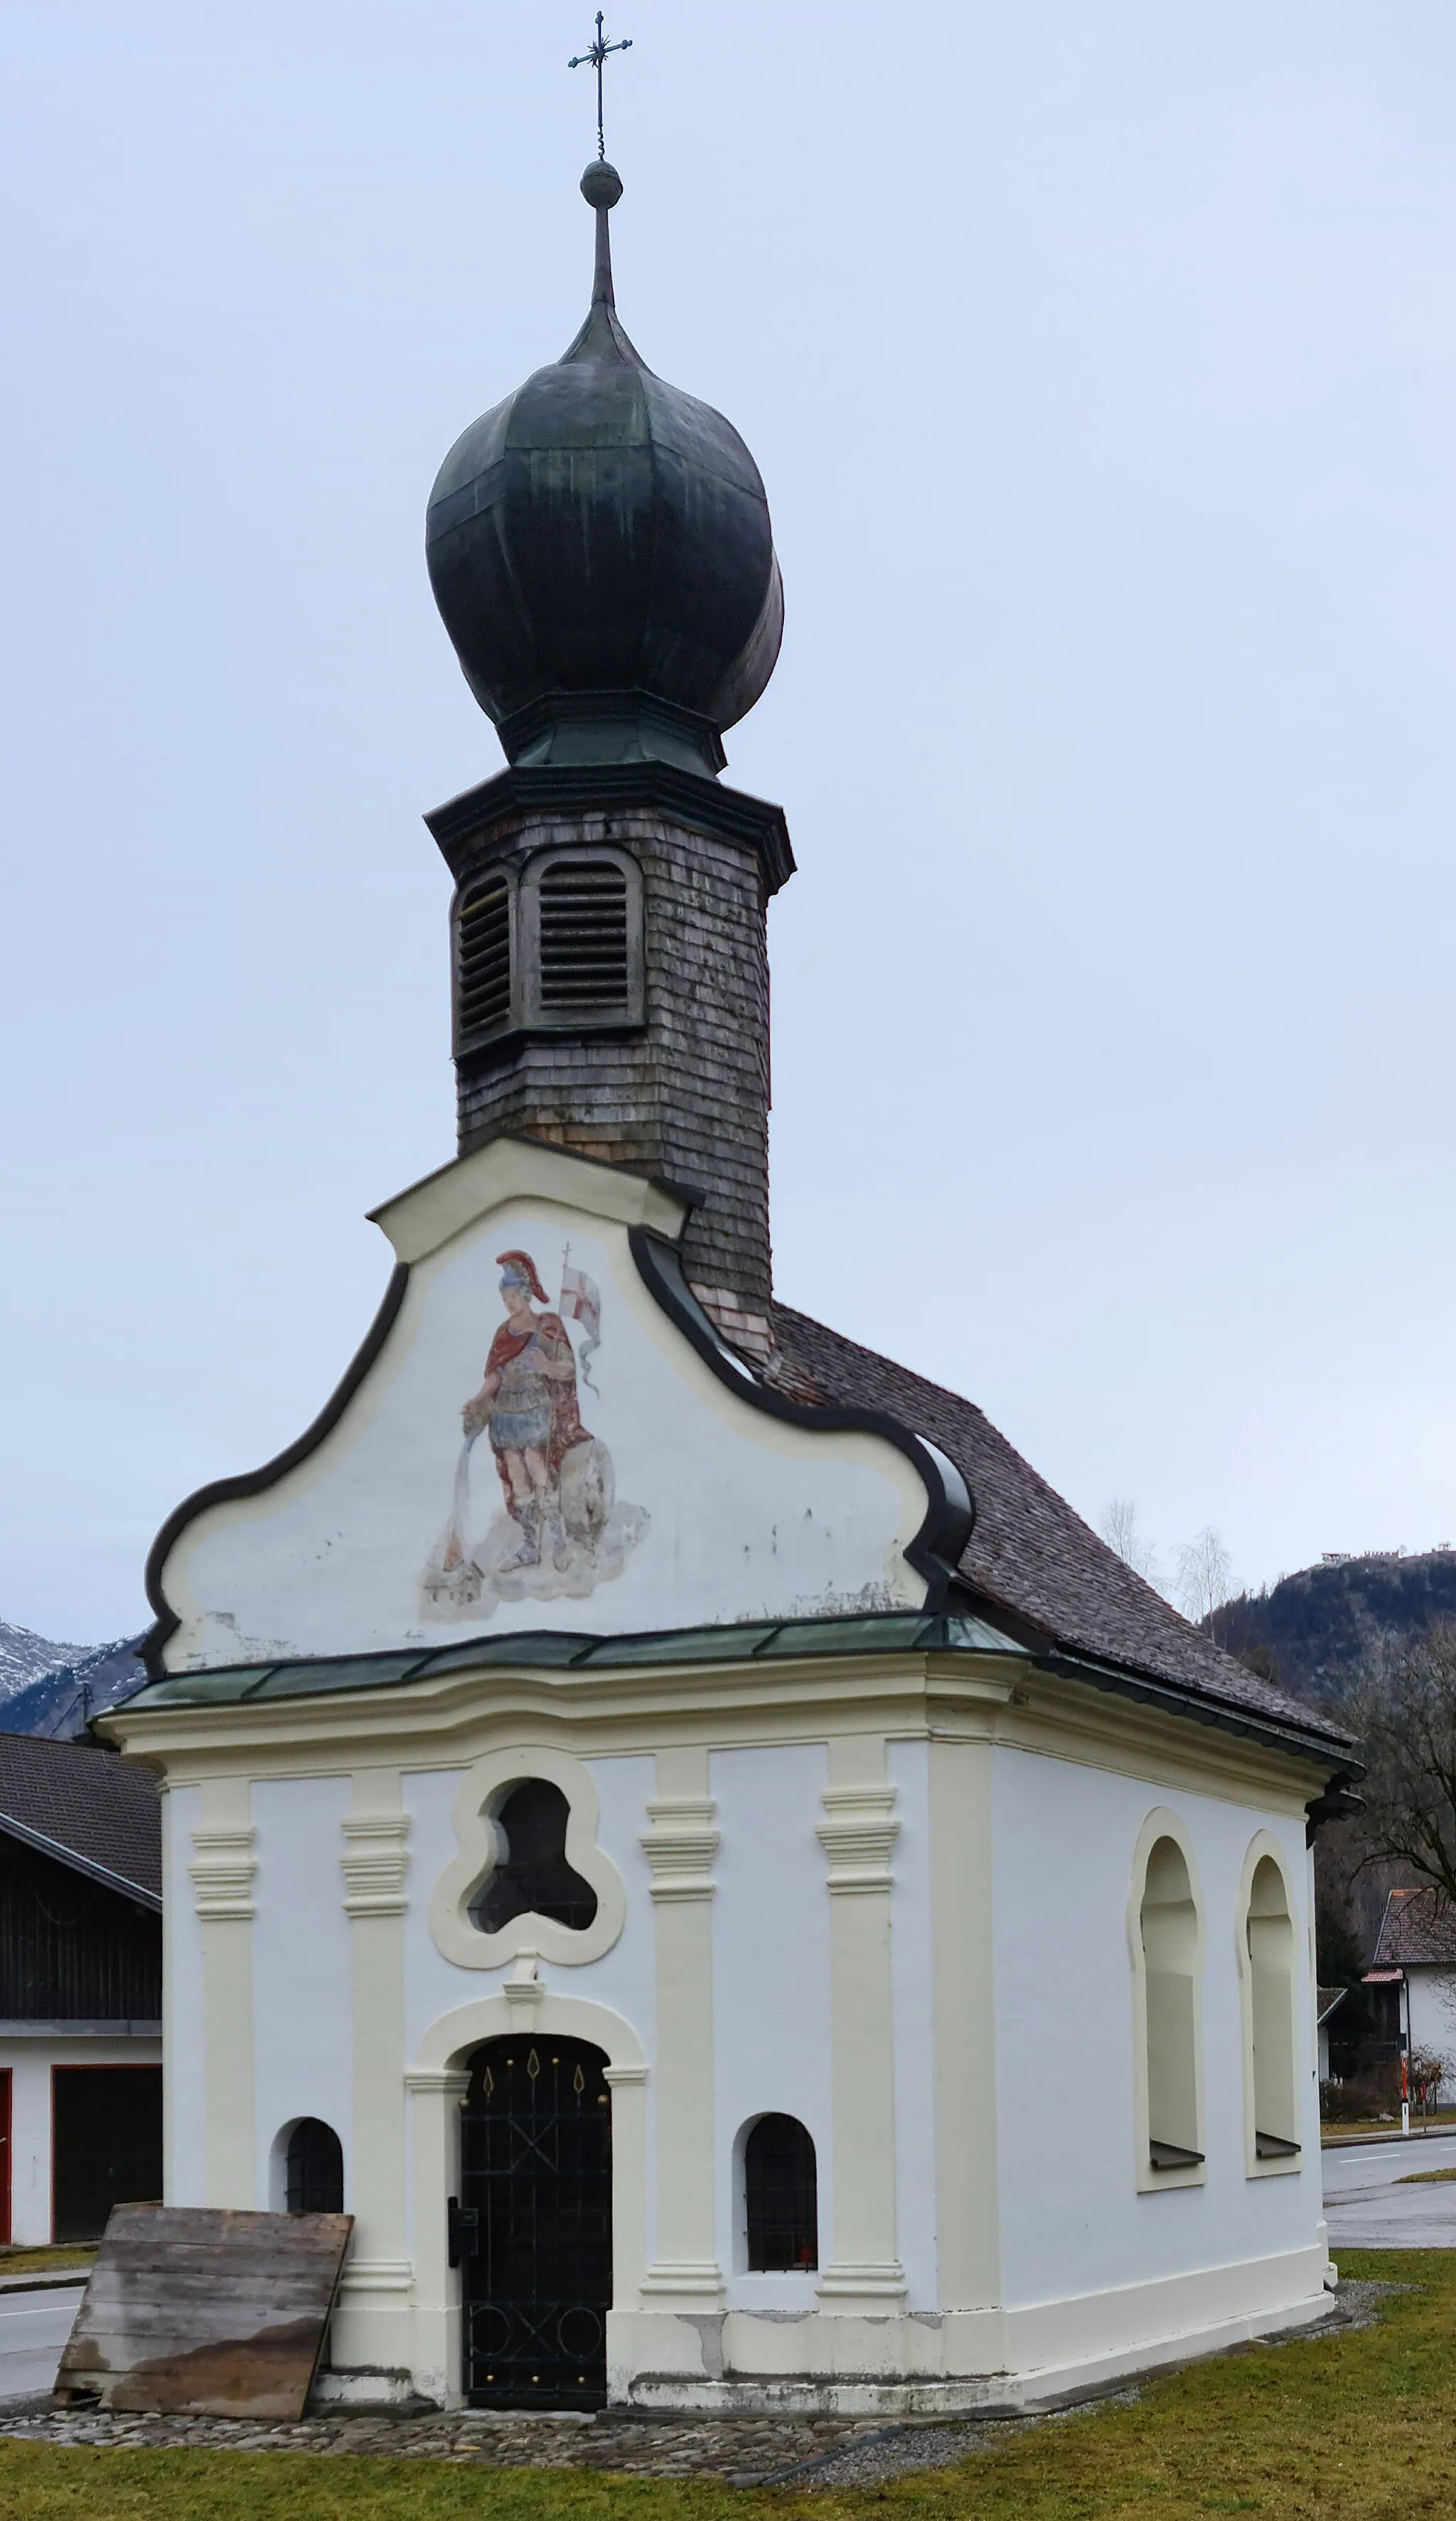 Kuva kohteesta Tirol